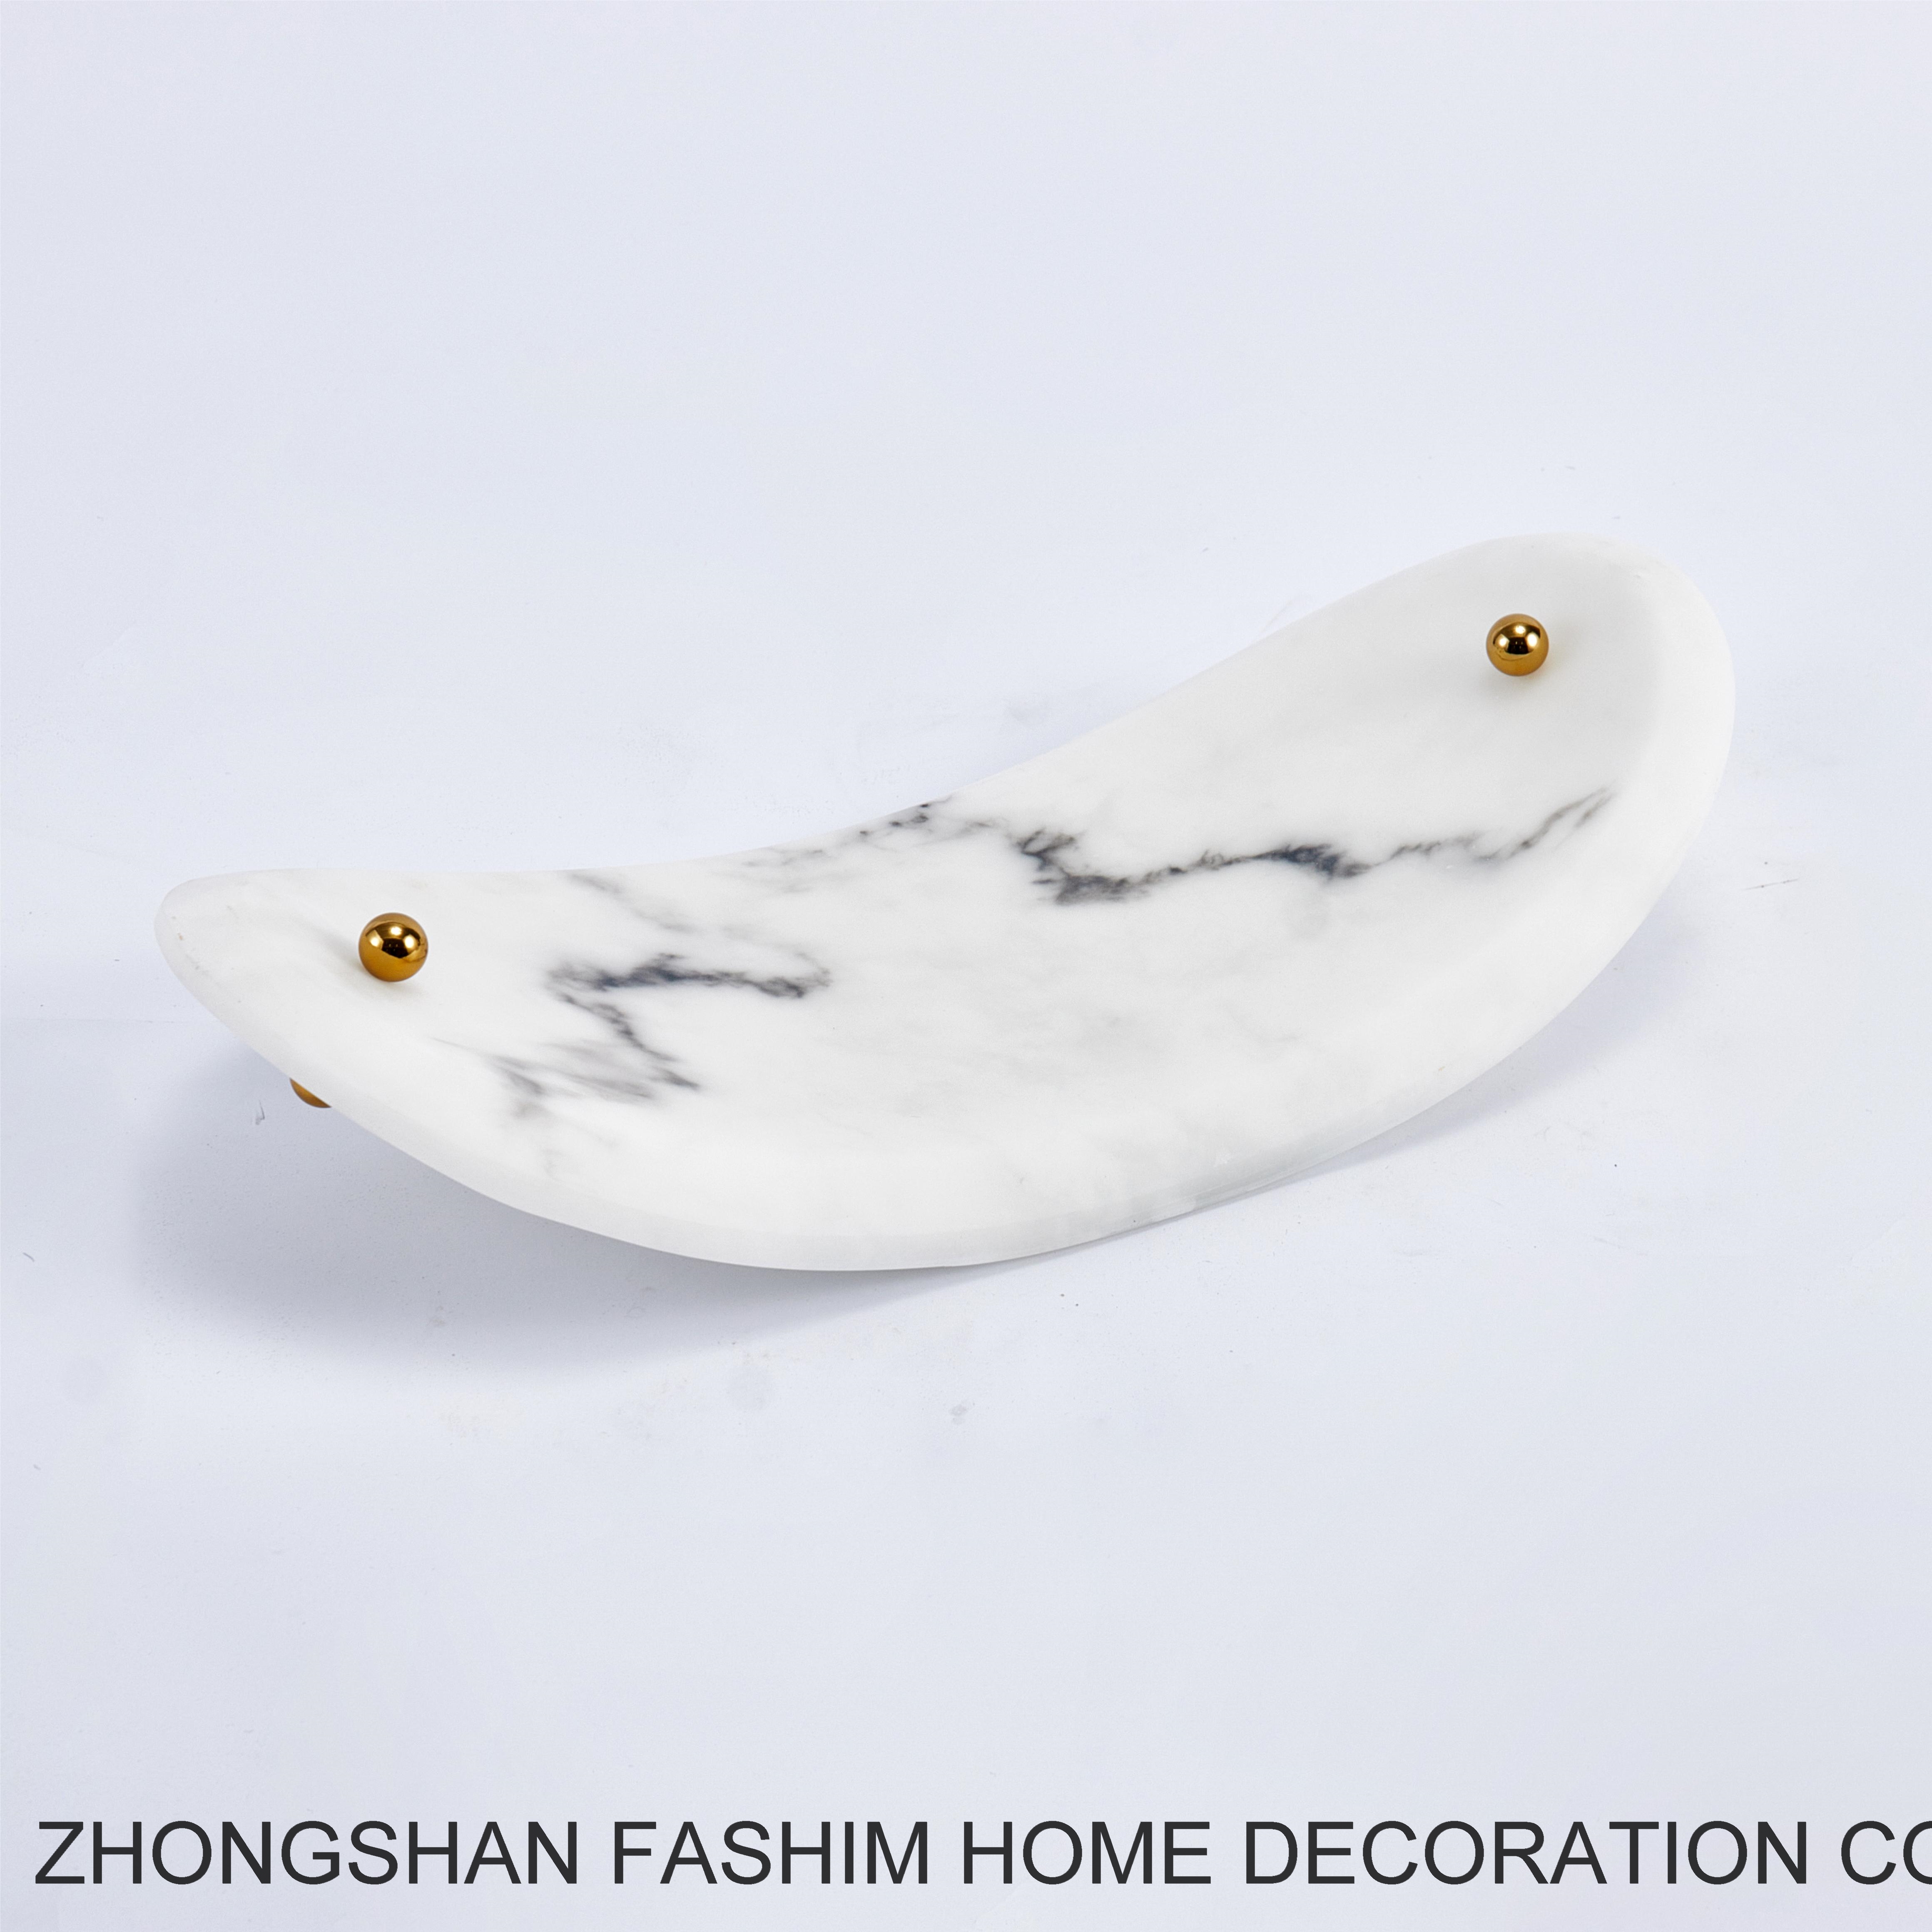 Fashimdecor Elegant home decoration and practical tray